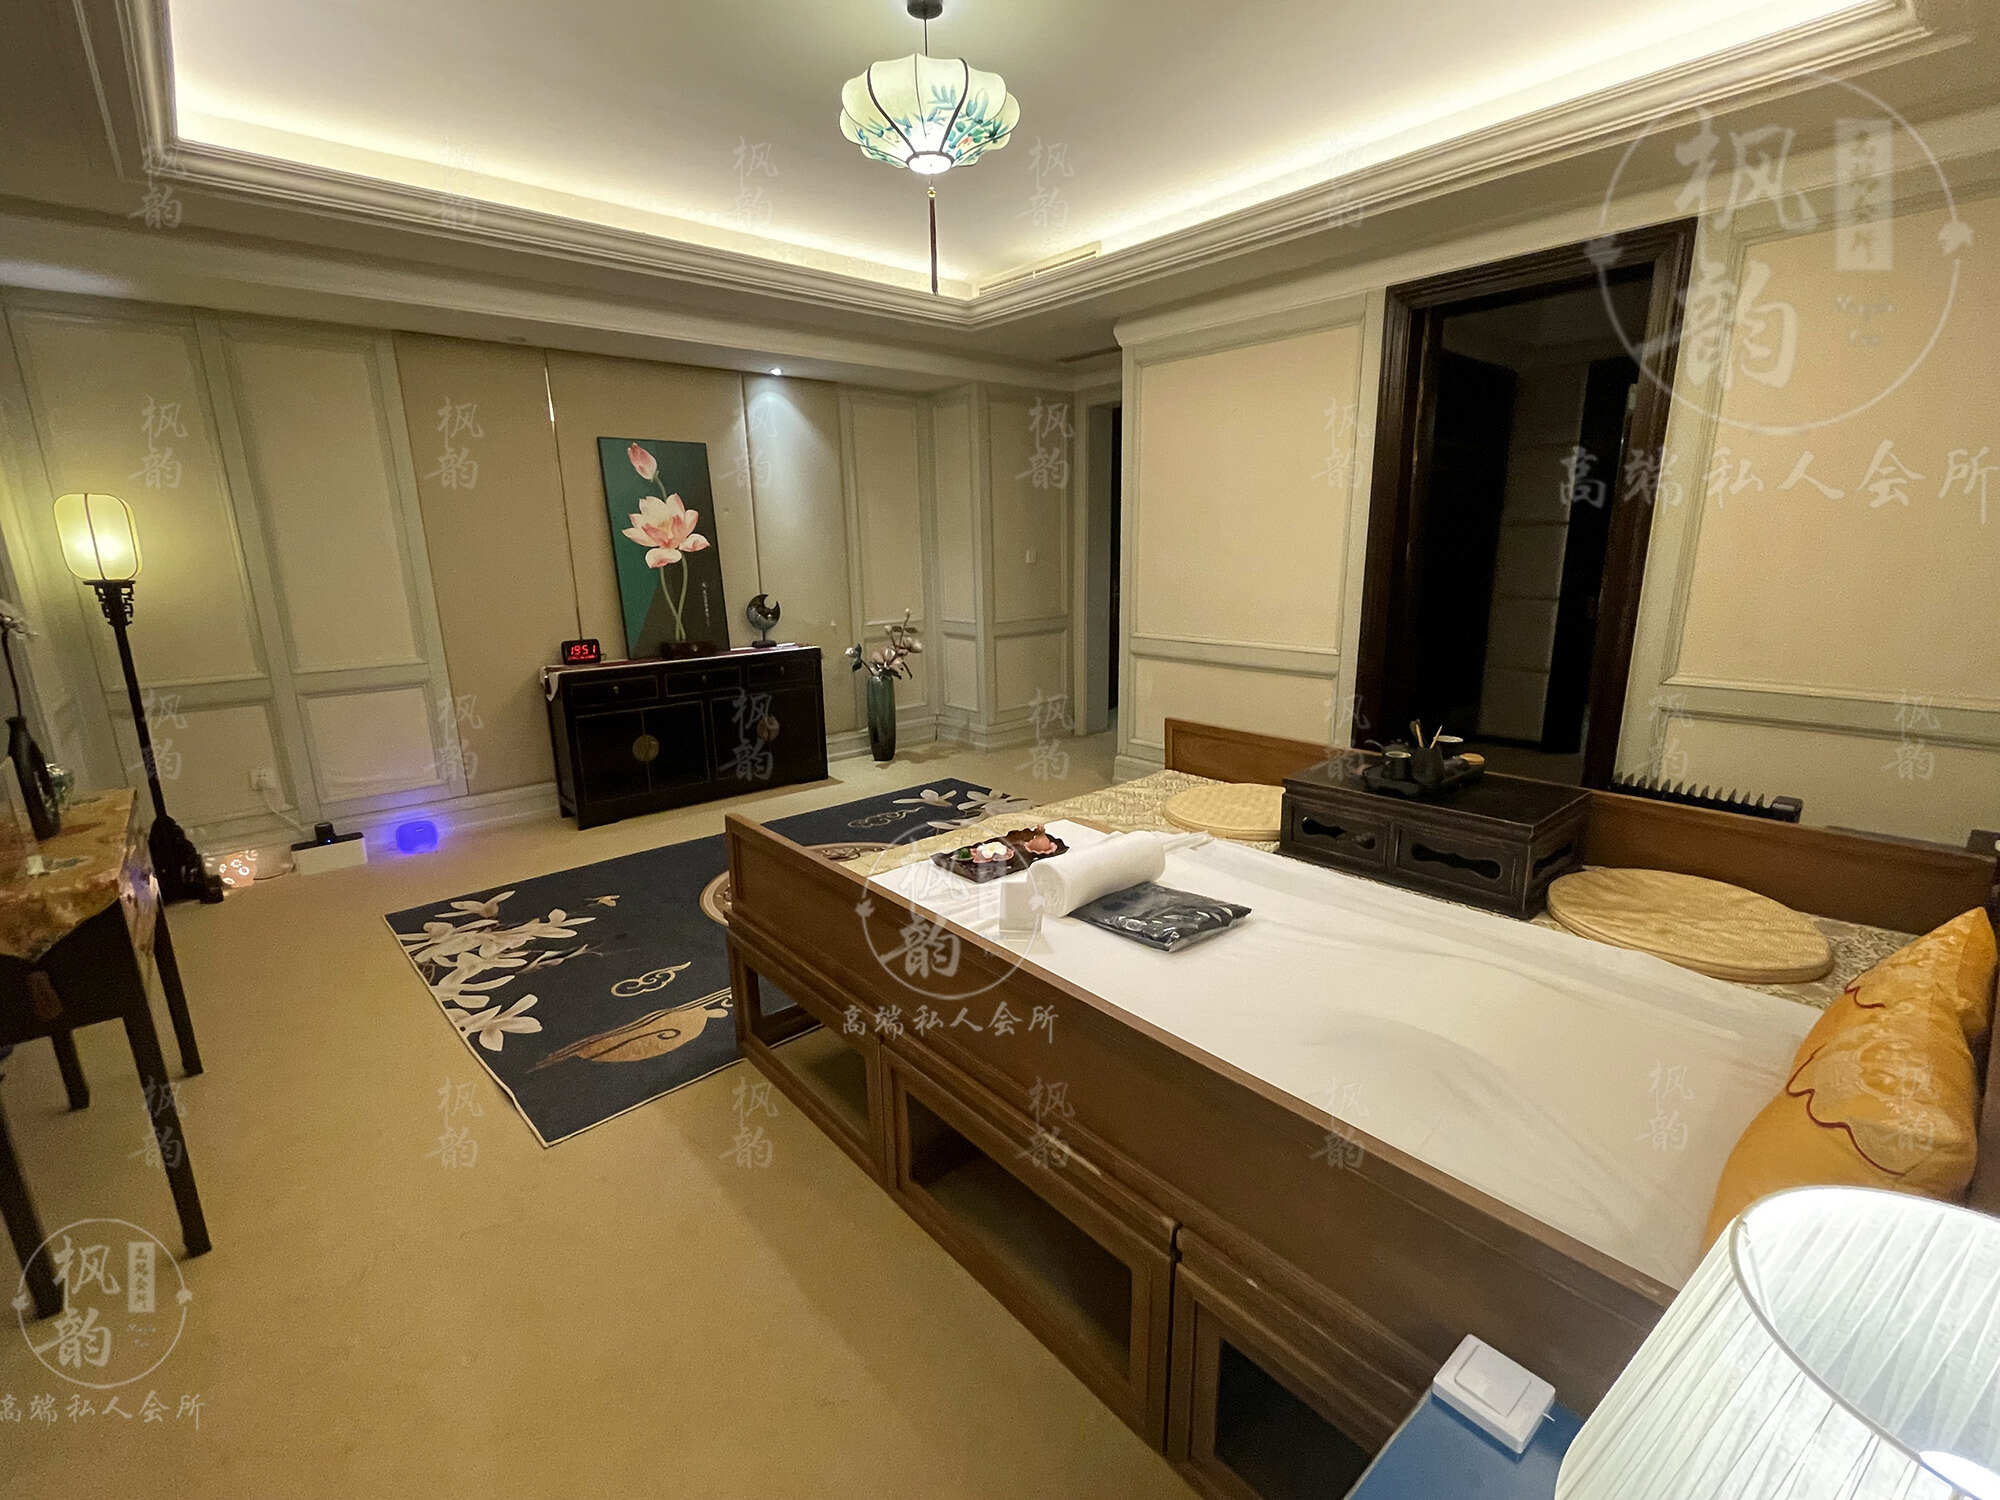 襄阳天津渔阳鼓楼人气优选沐足会馆房间也很干净，舒适的spa体验